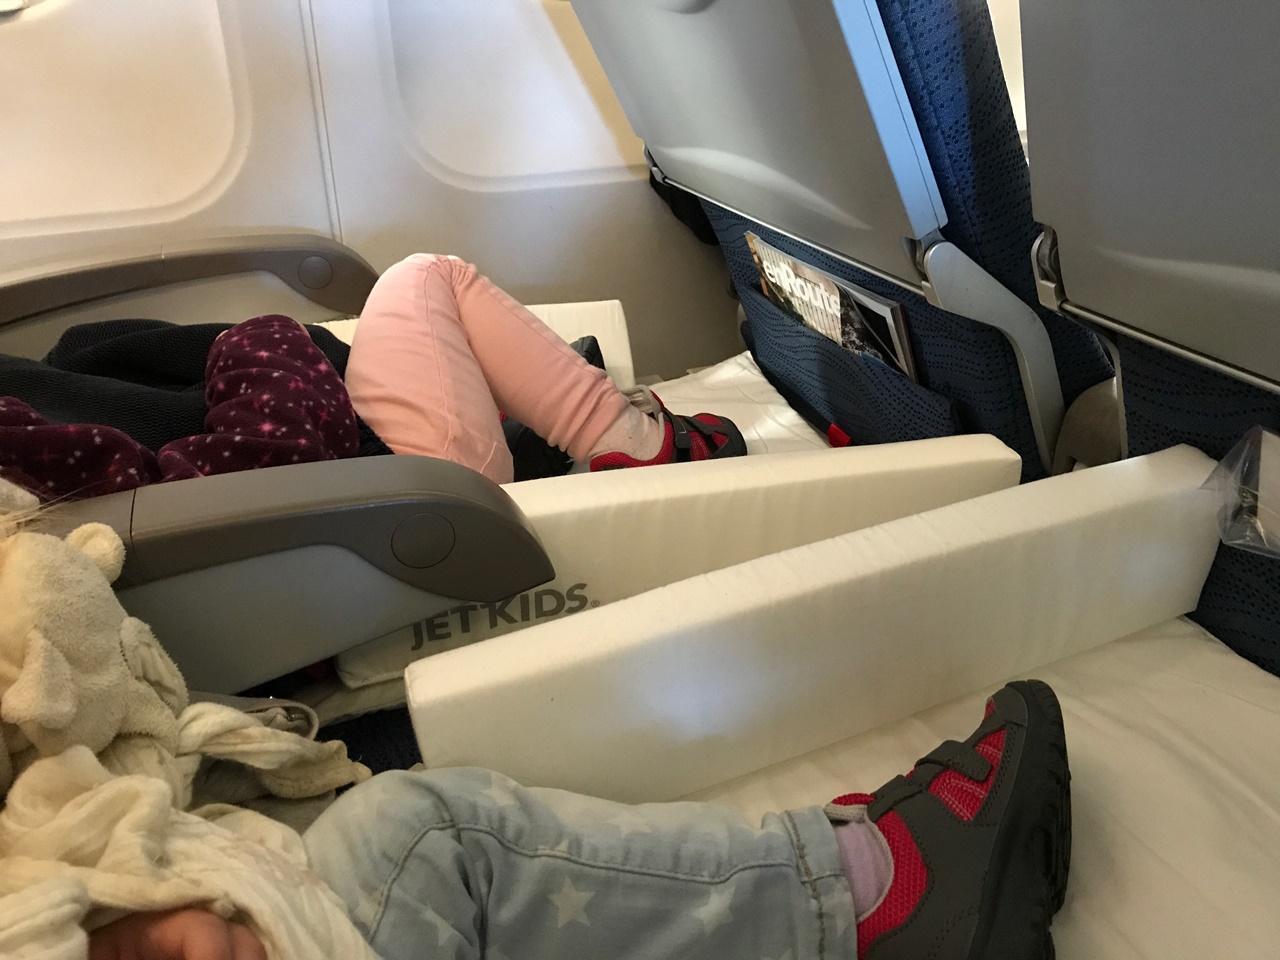 Bed Box de jet Kids Valise lit avion pour enfant (3)